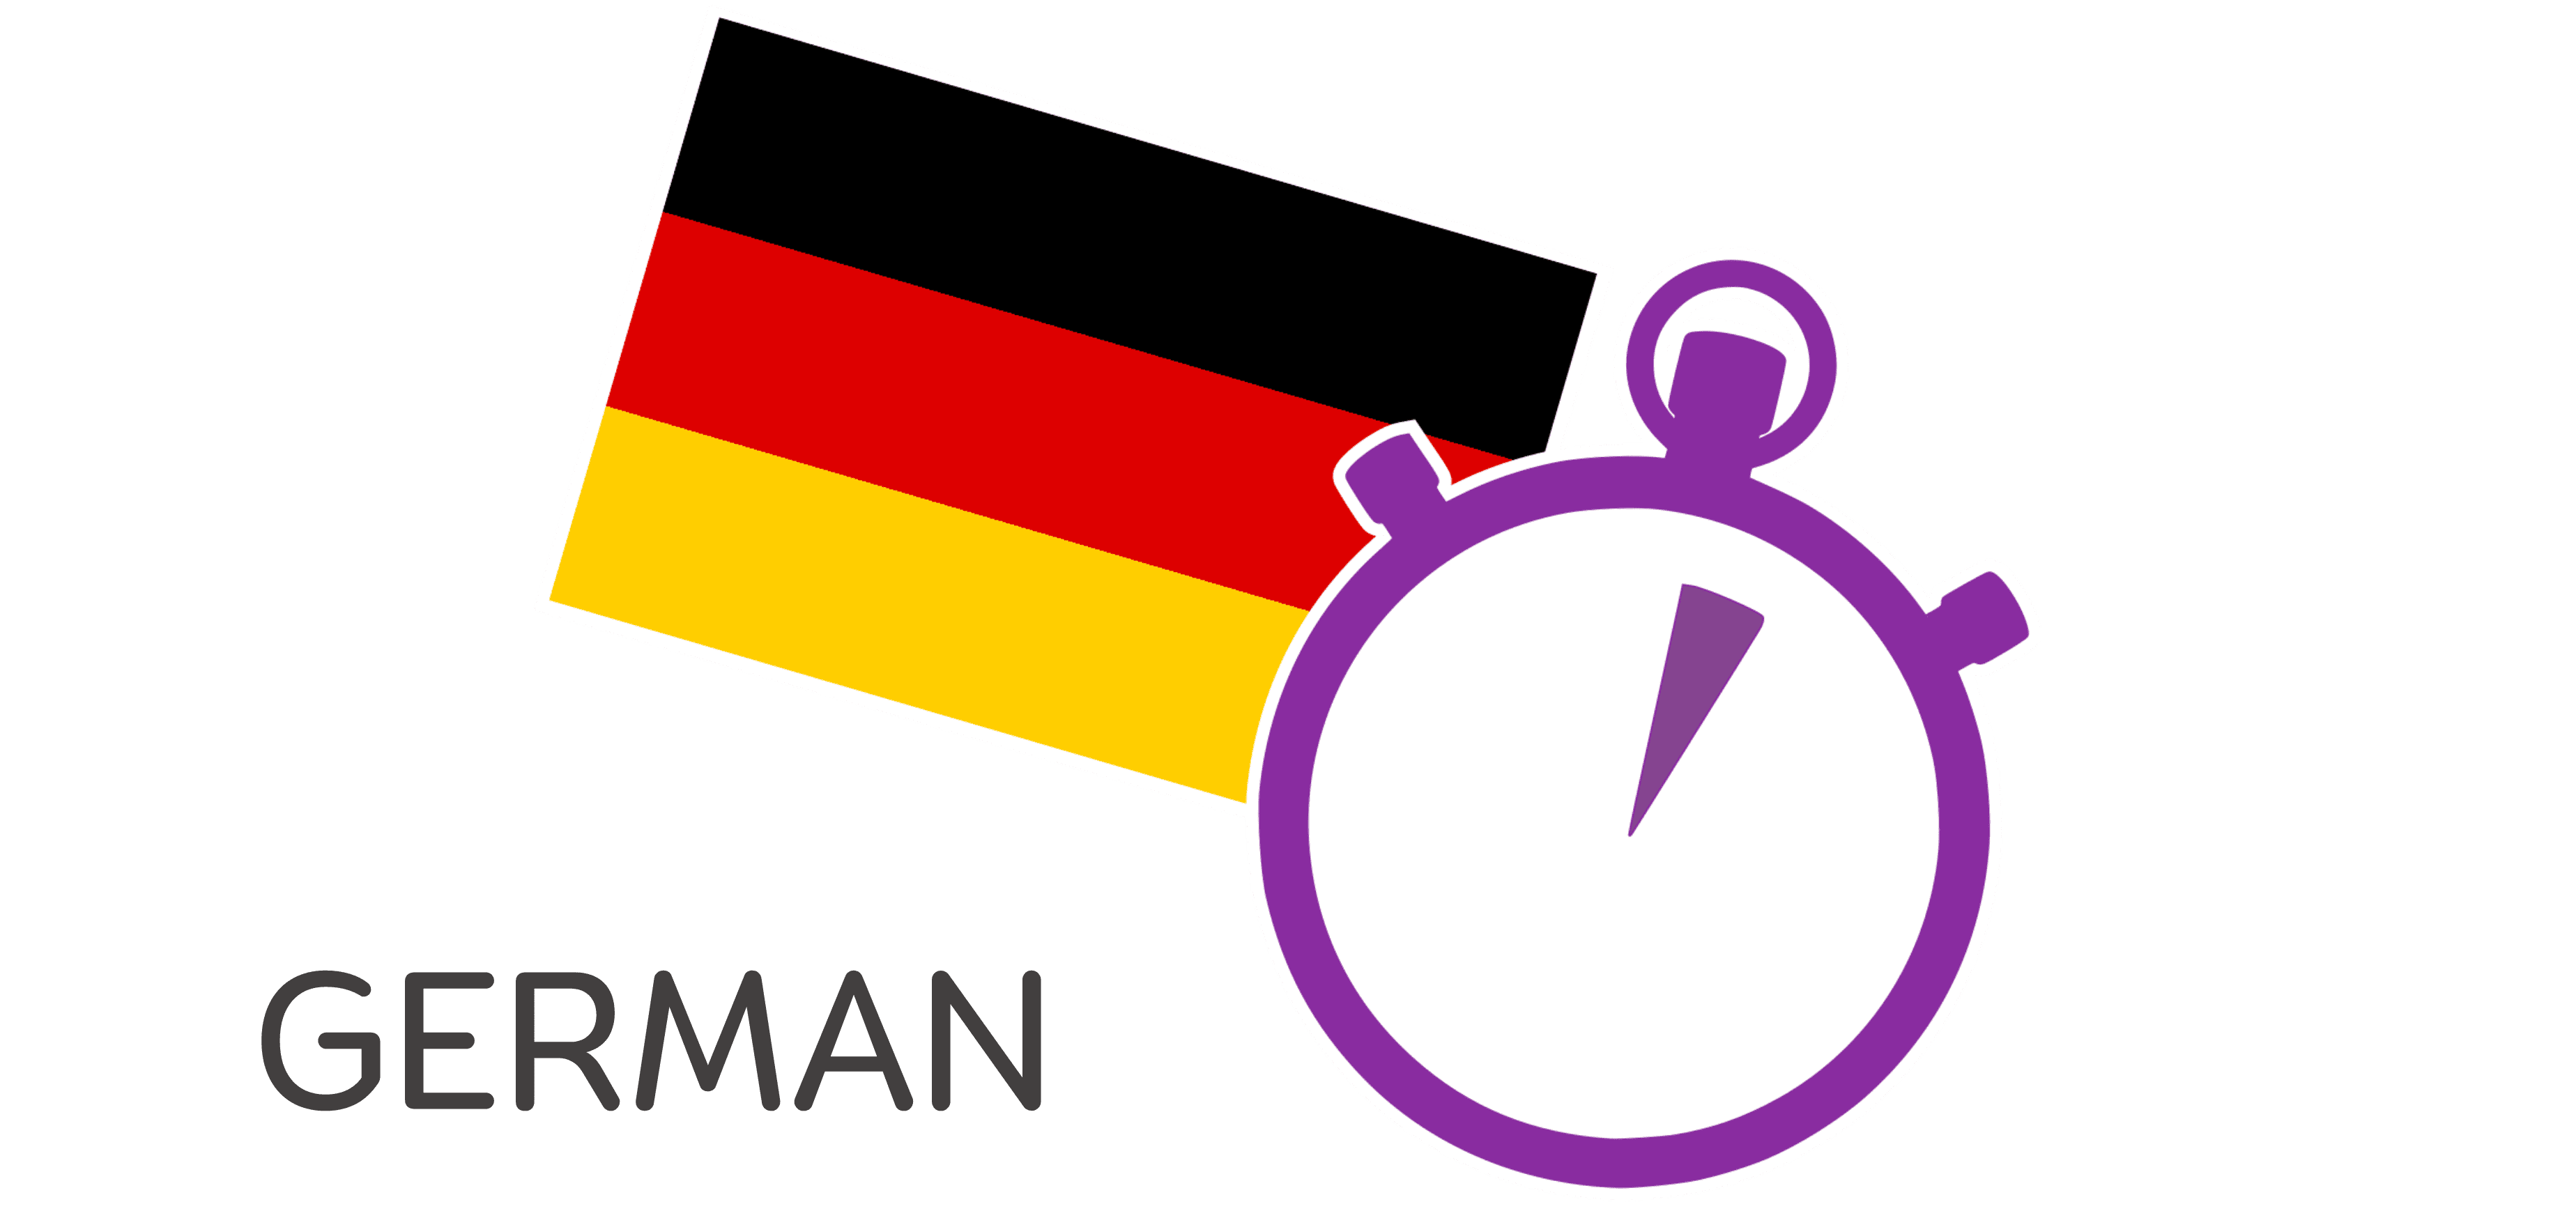 3 Minute German